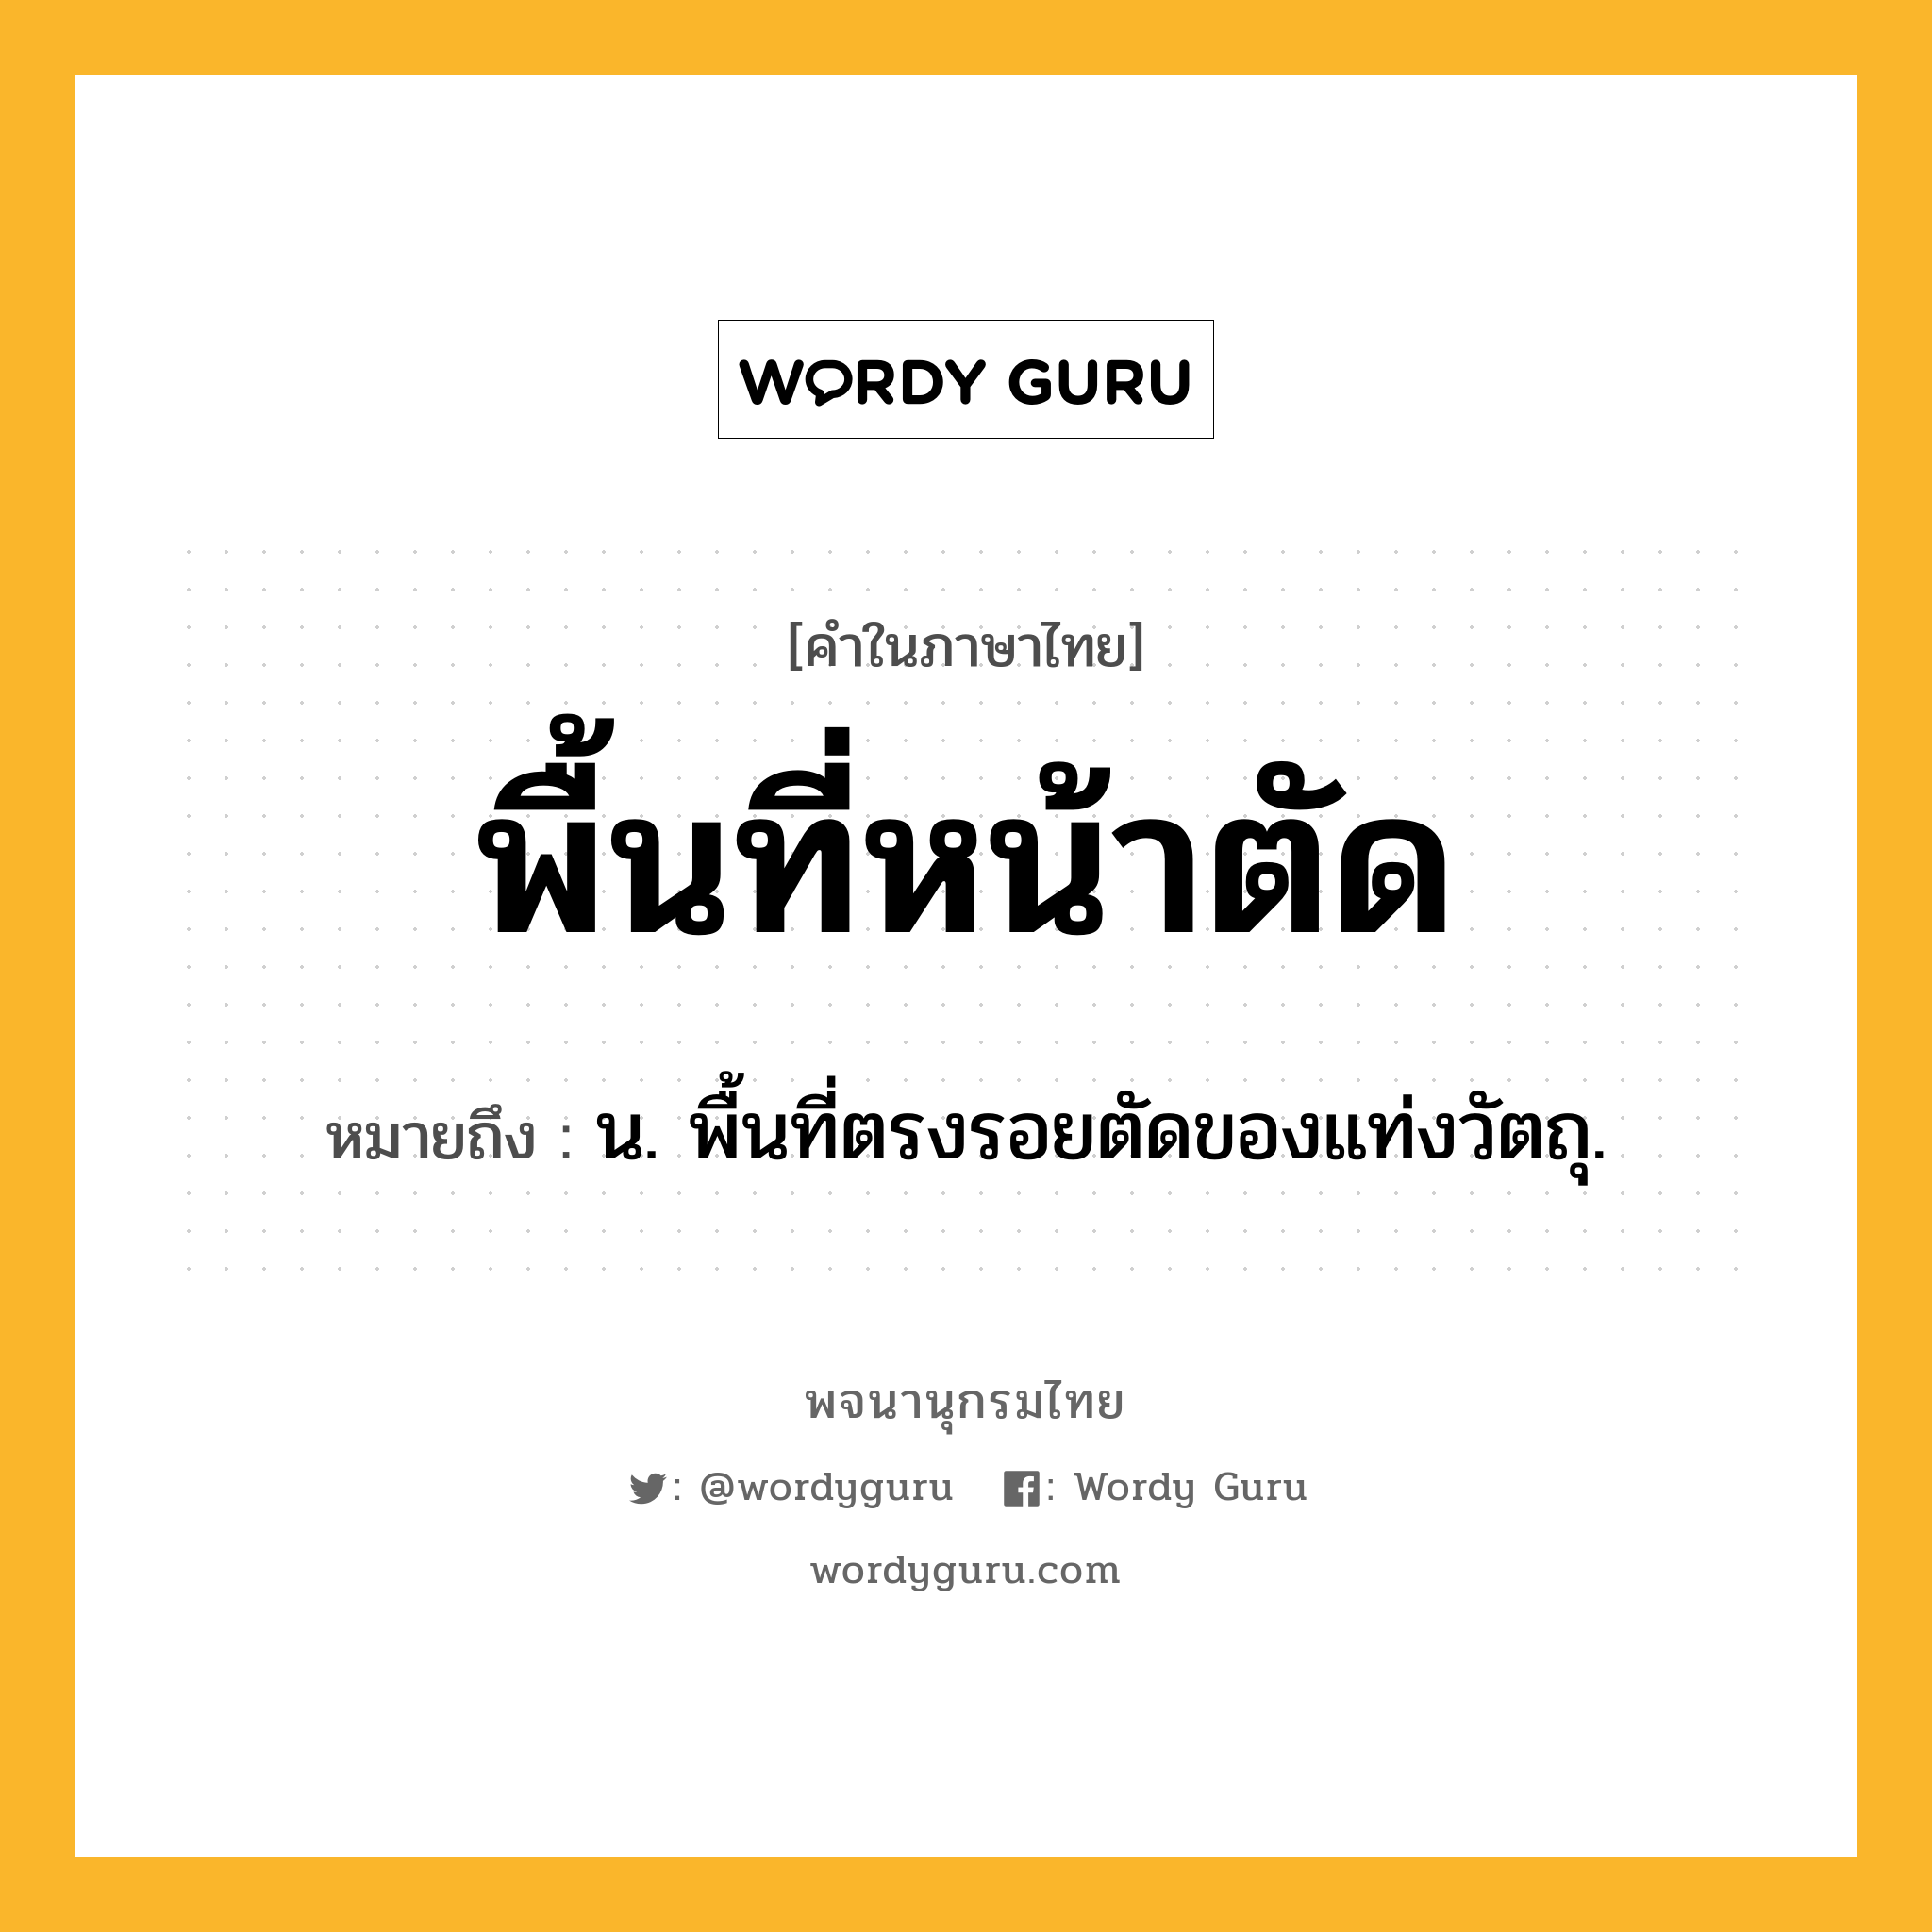 พื้นที่หน้าตัด ความหมาย หมายถึงอะไร?, คำในภาษาไทย พื้นที่หน้าตัด หมายถึง น. พื้นที่ตรงรอยตัดของแท่งวัตถุ.